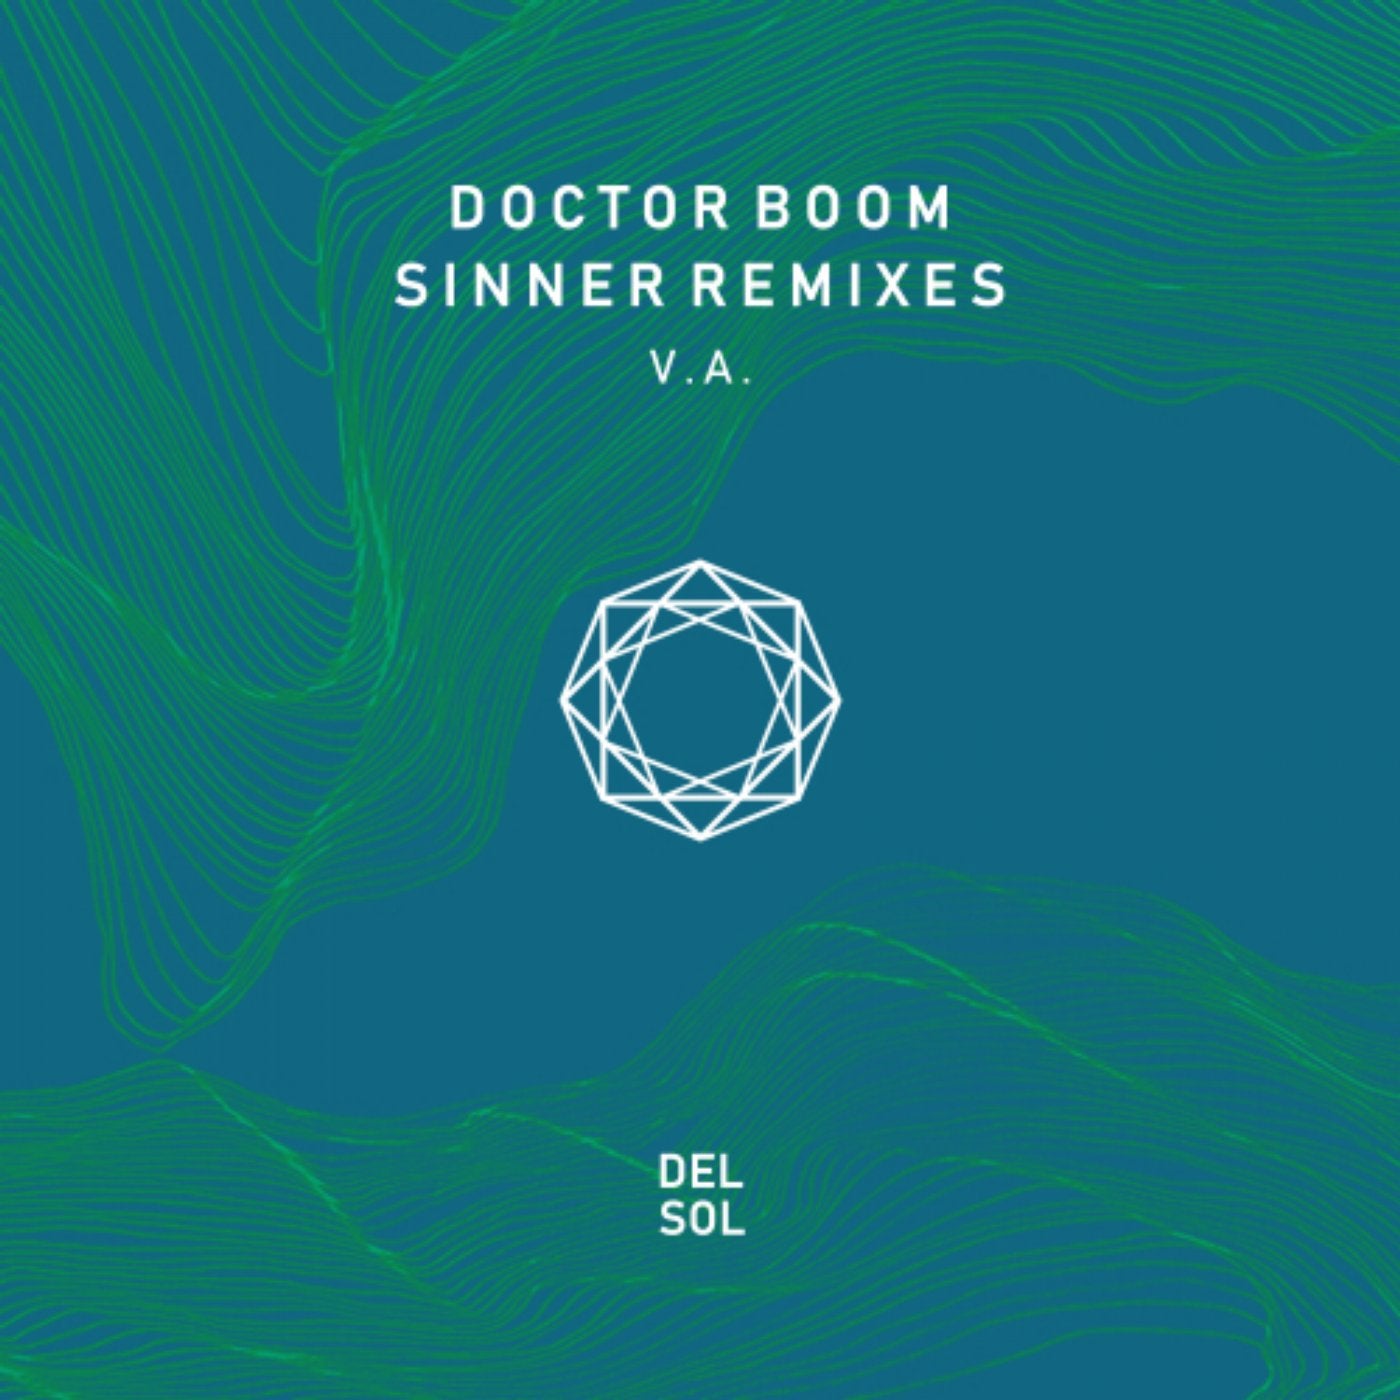 Sinner Remixes